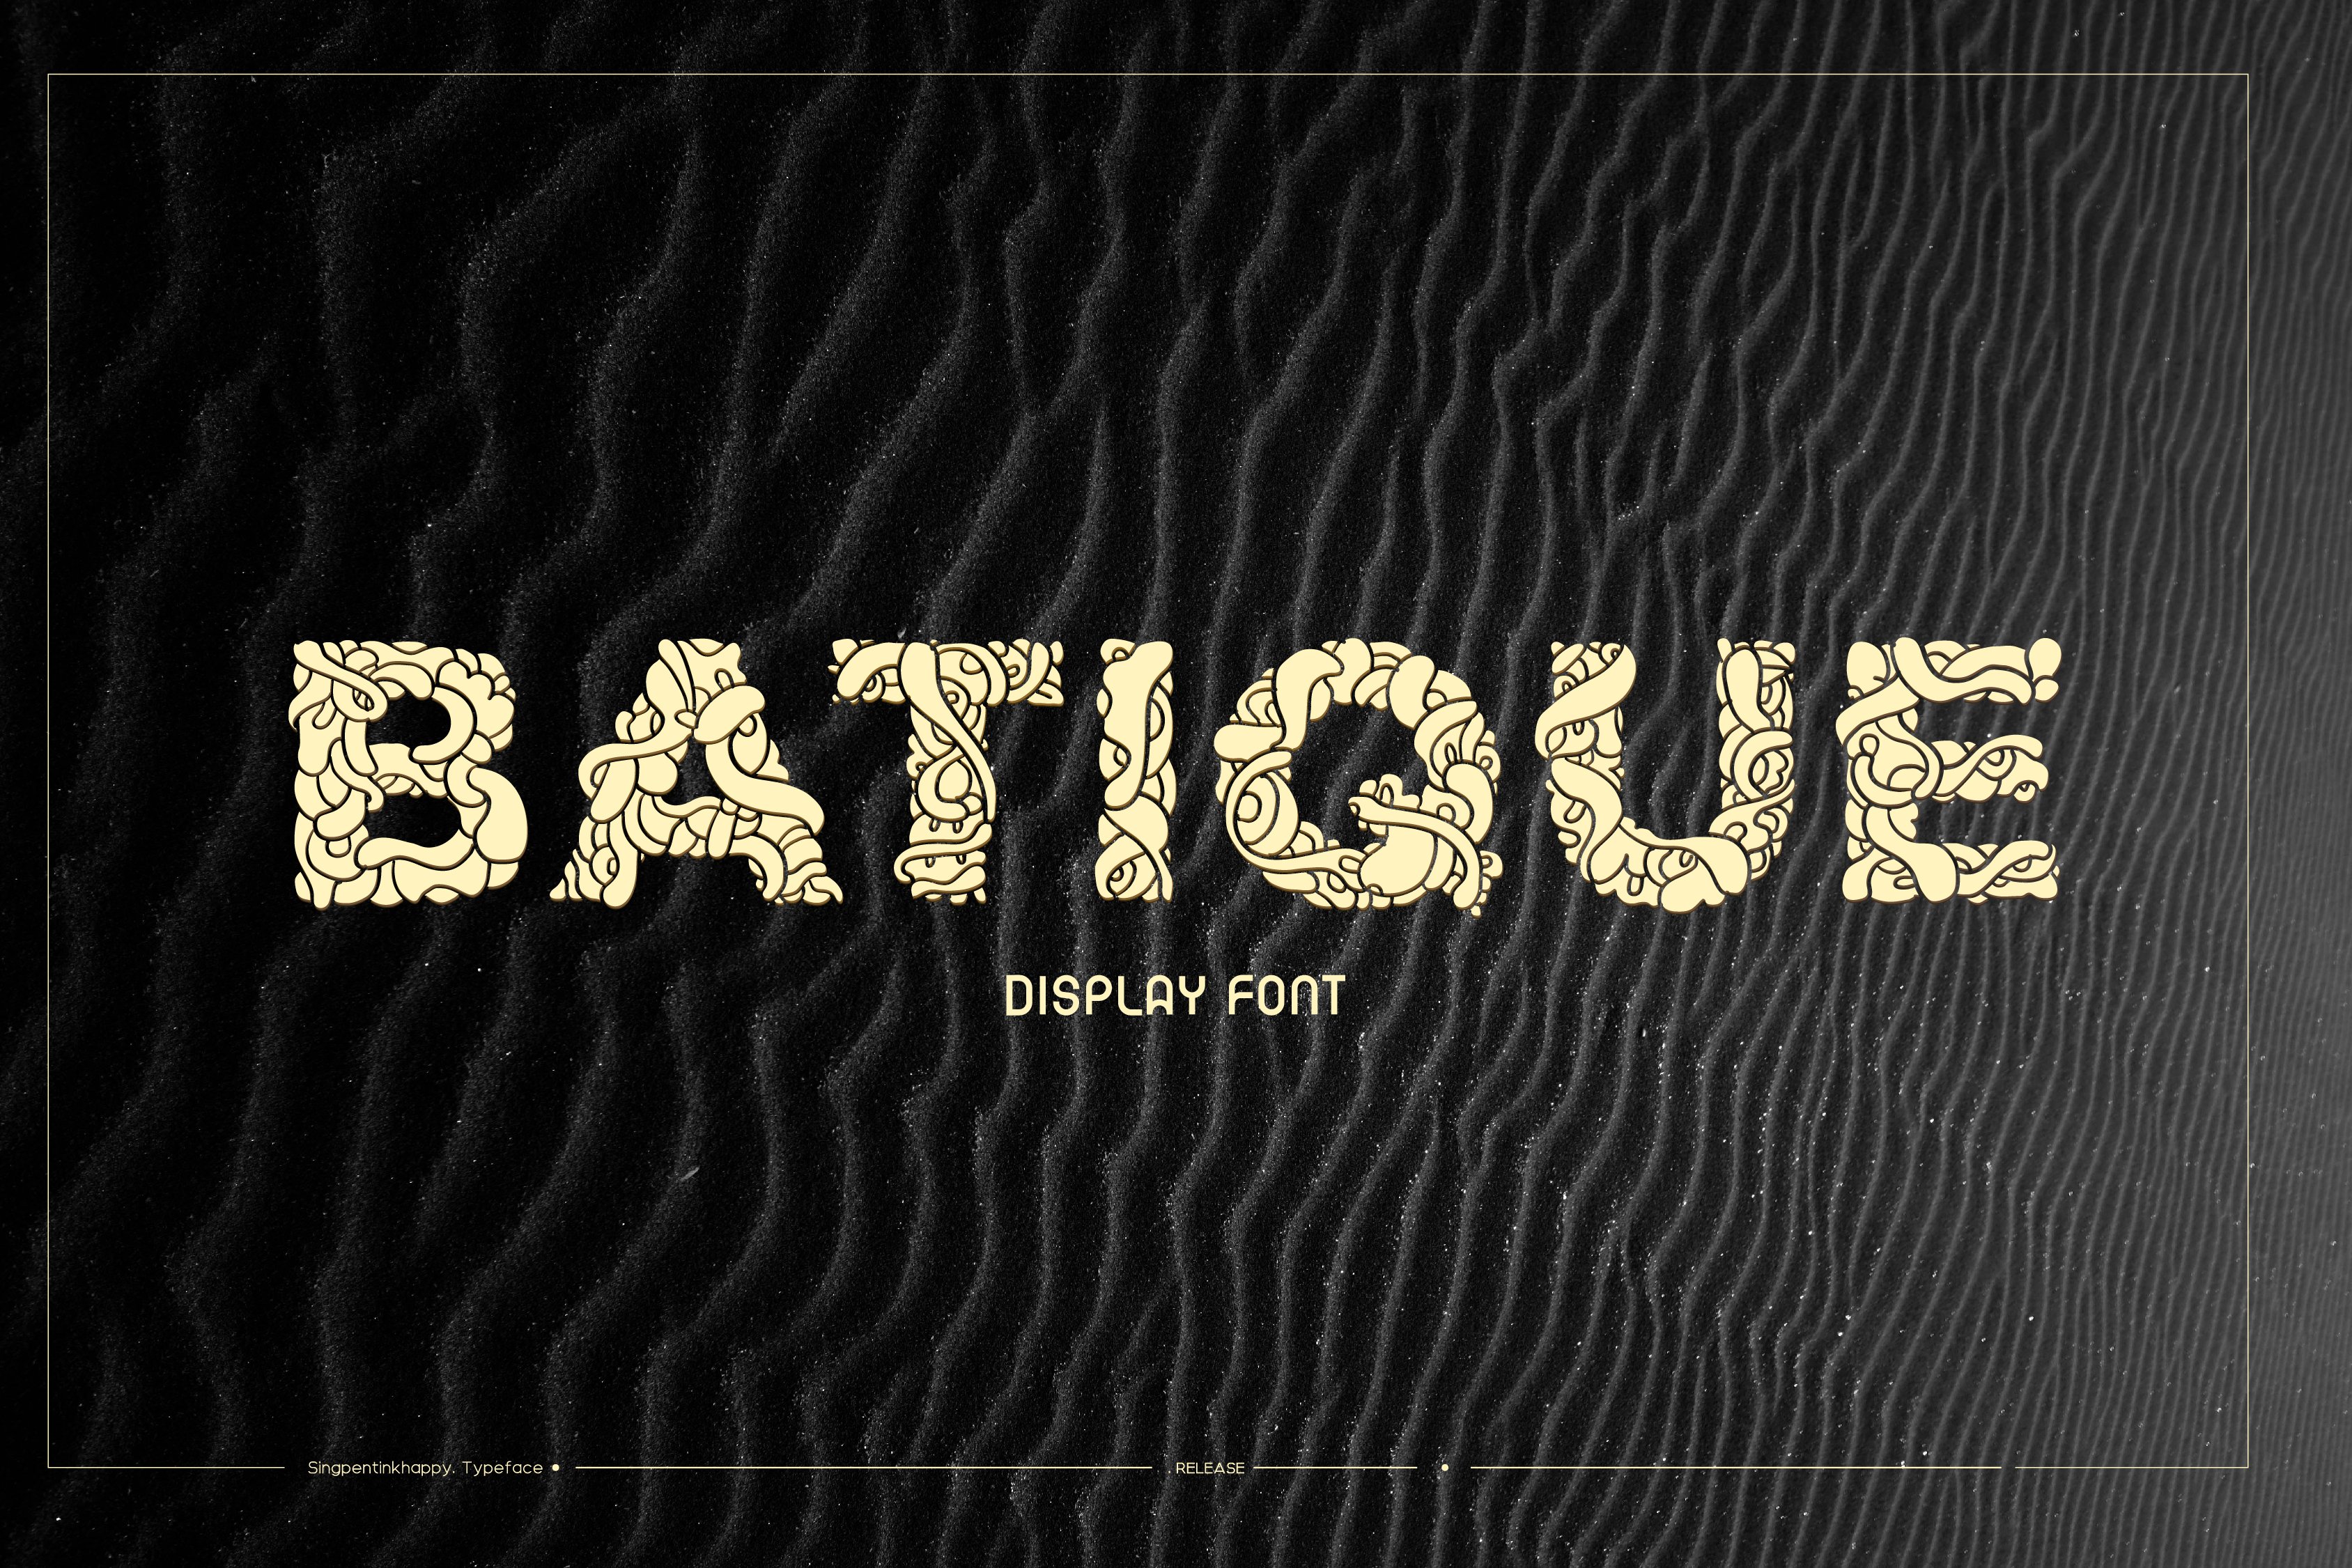 Batique - Batik Display Font cover image.